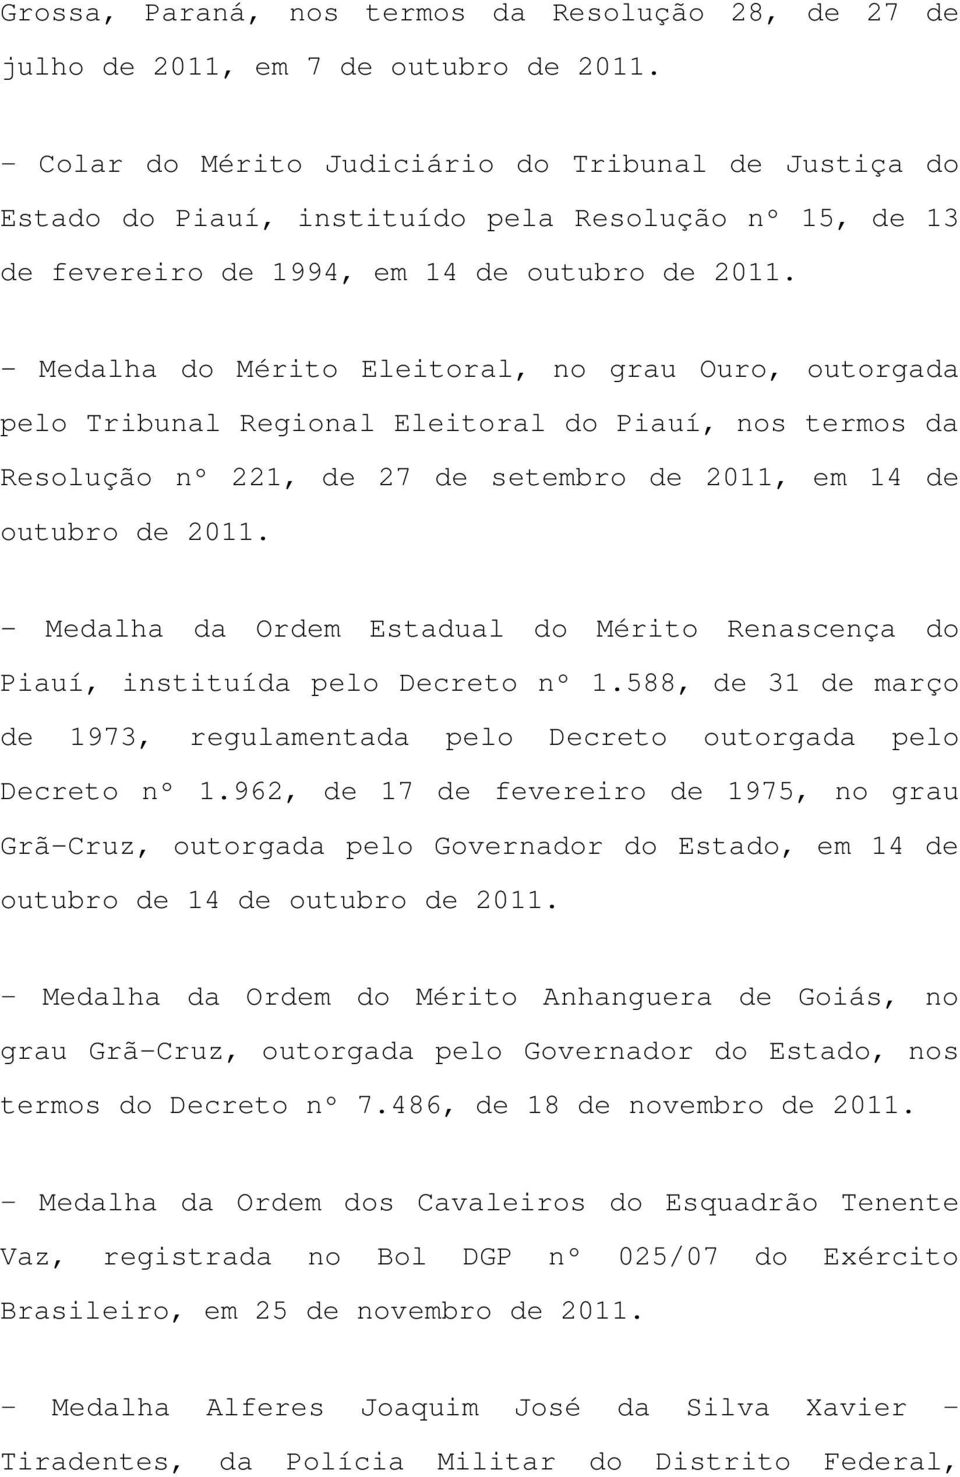 - Medalha do Mérito Eleitoral, no grau Ouro, outorgada pelo Tribunal Regional Eleitoral do Piauí, nos termos da Resolução nº 221, de 27 de setembro de 2011, em 14 de outubro de 2011.